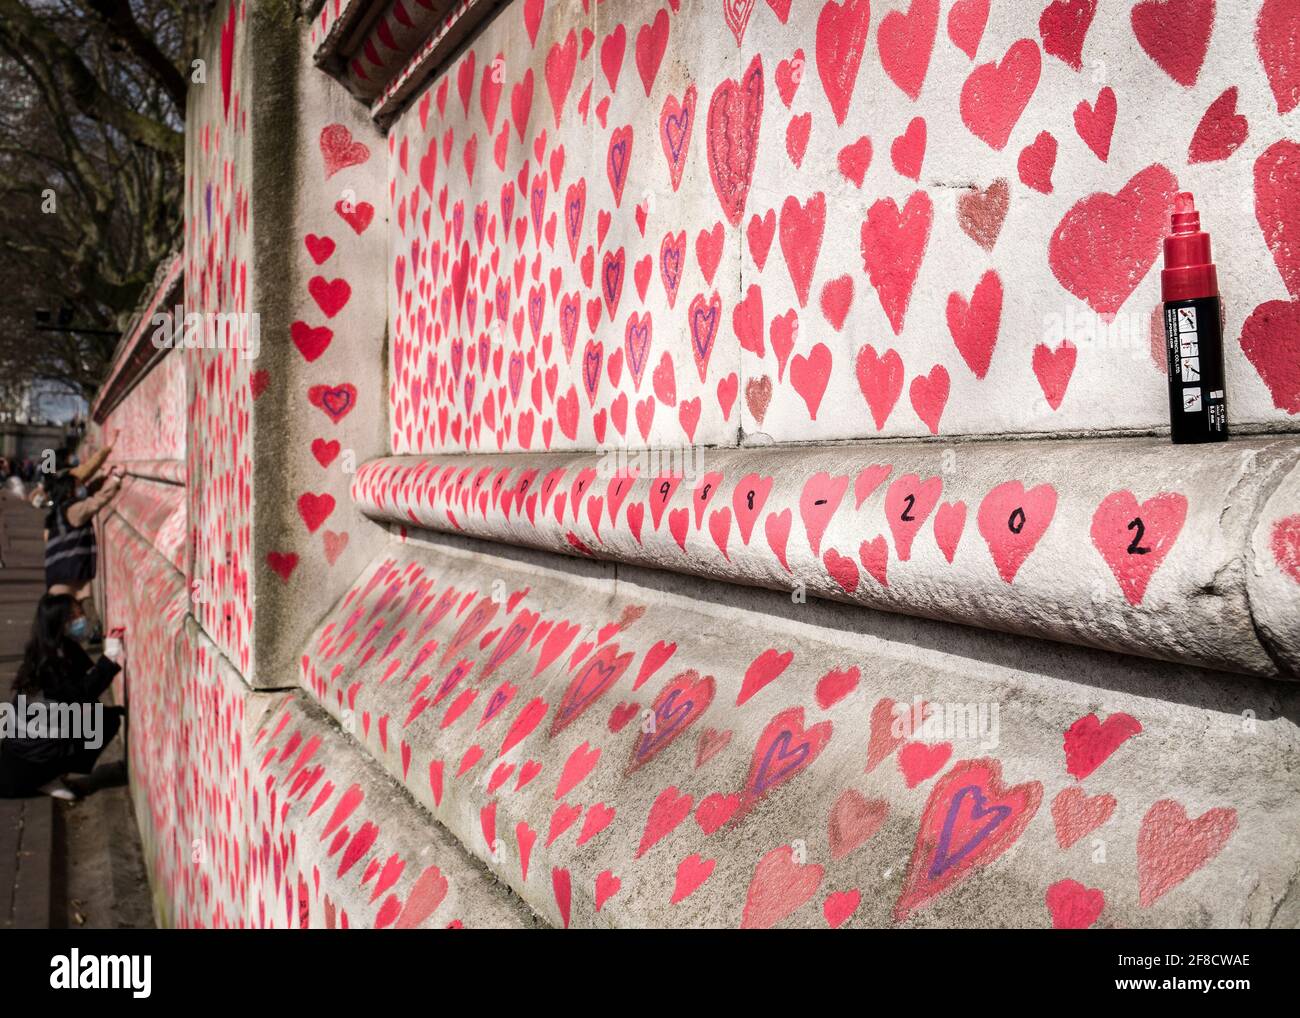 Mur national du Covid, 150,000 coeurs peints sur le mur en face des chambres du Parlement comme un mémorial pour ceux qui sont morts du coronavirus Banque D'Images